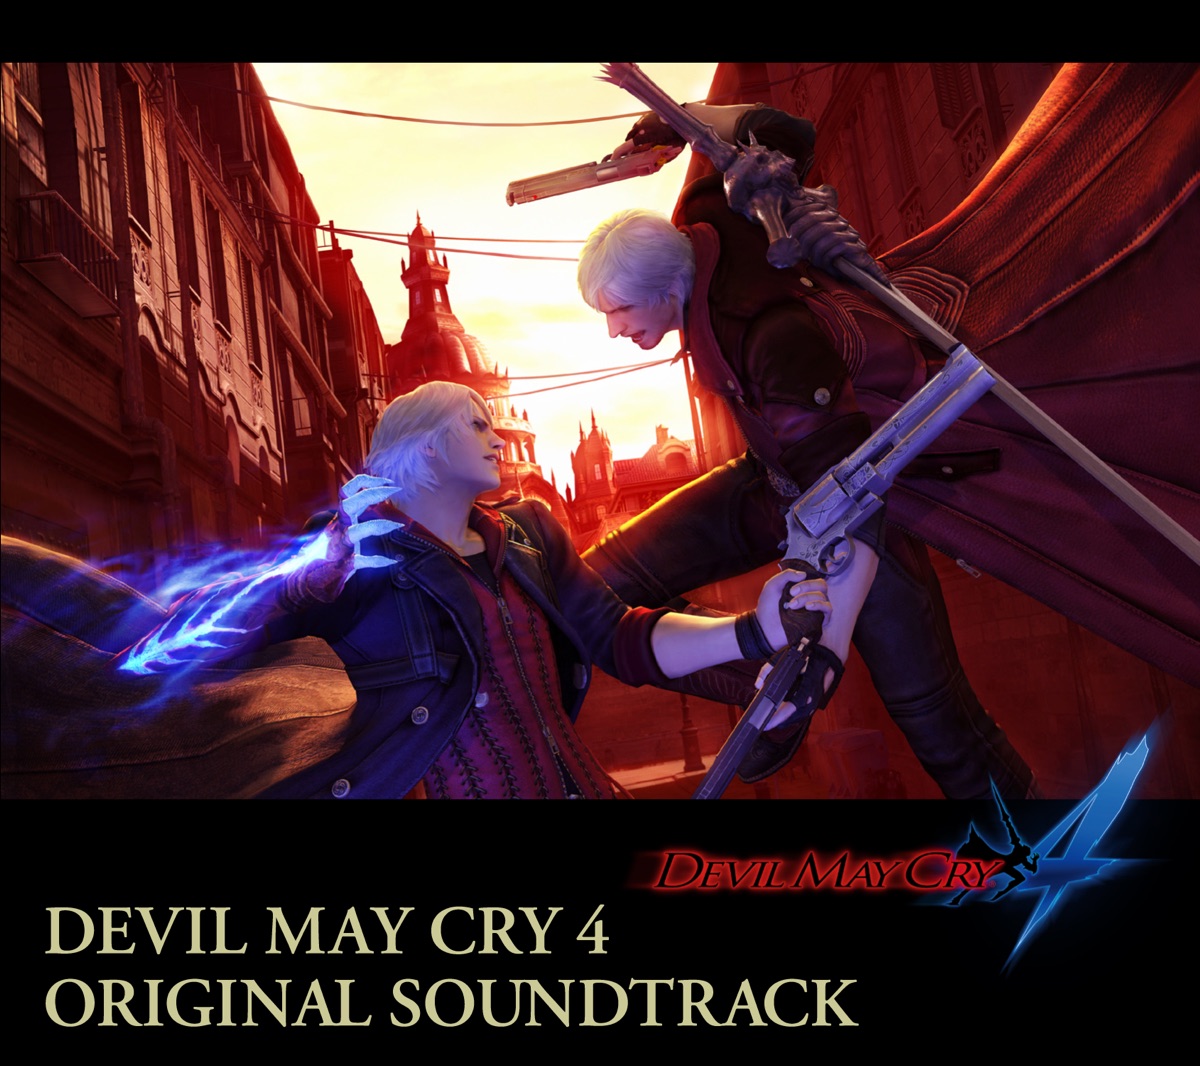 El OST de Bayonetta 3 ya está disponible en Spotify, Apple Music y